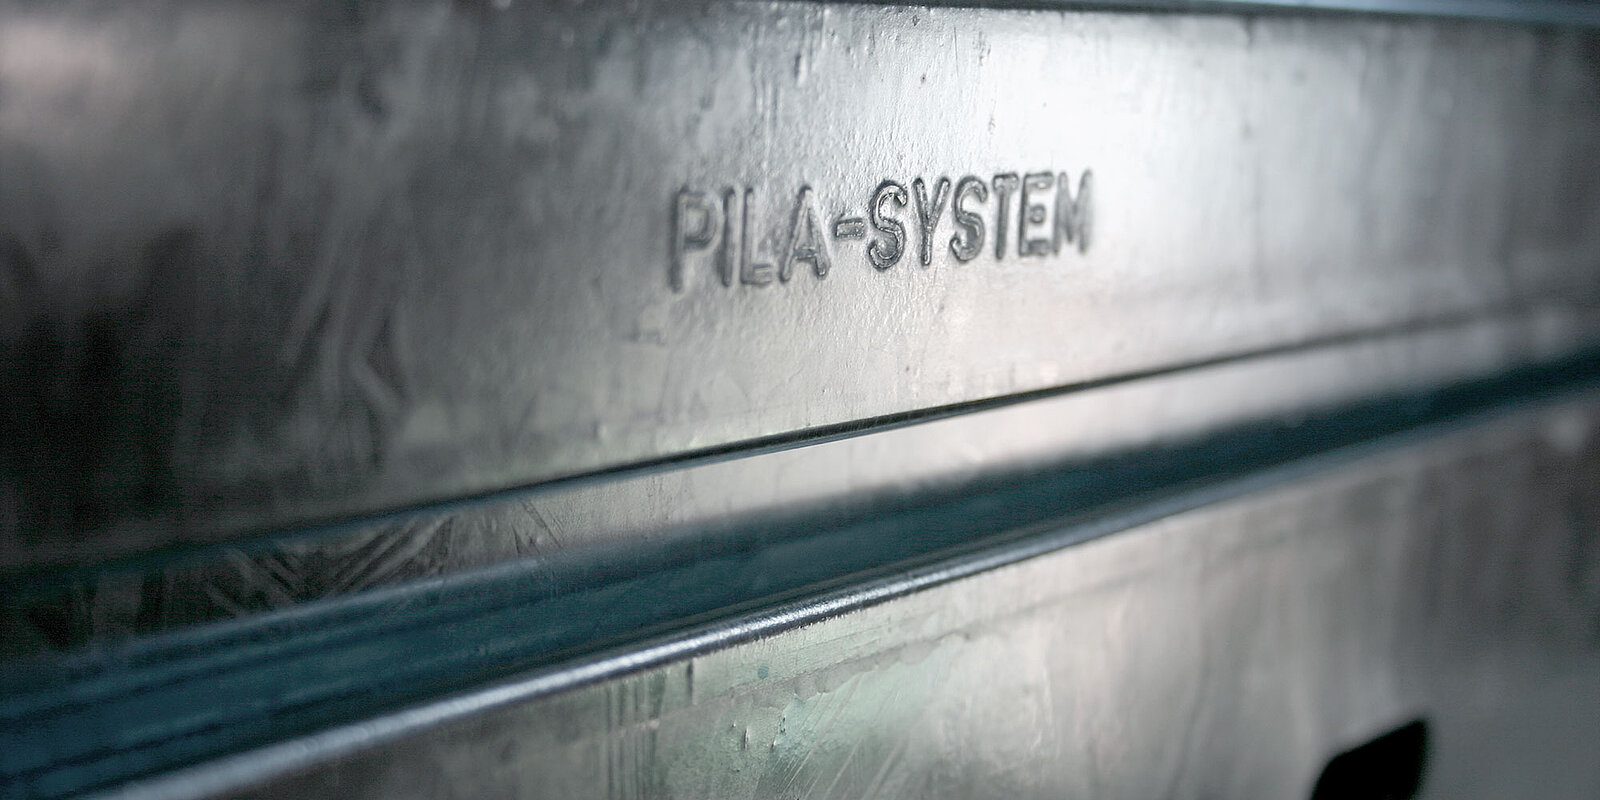 Detailaufnahme mit Inschrift "PILA-SYSTEM"